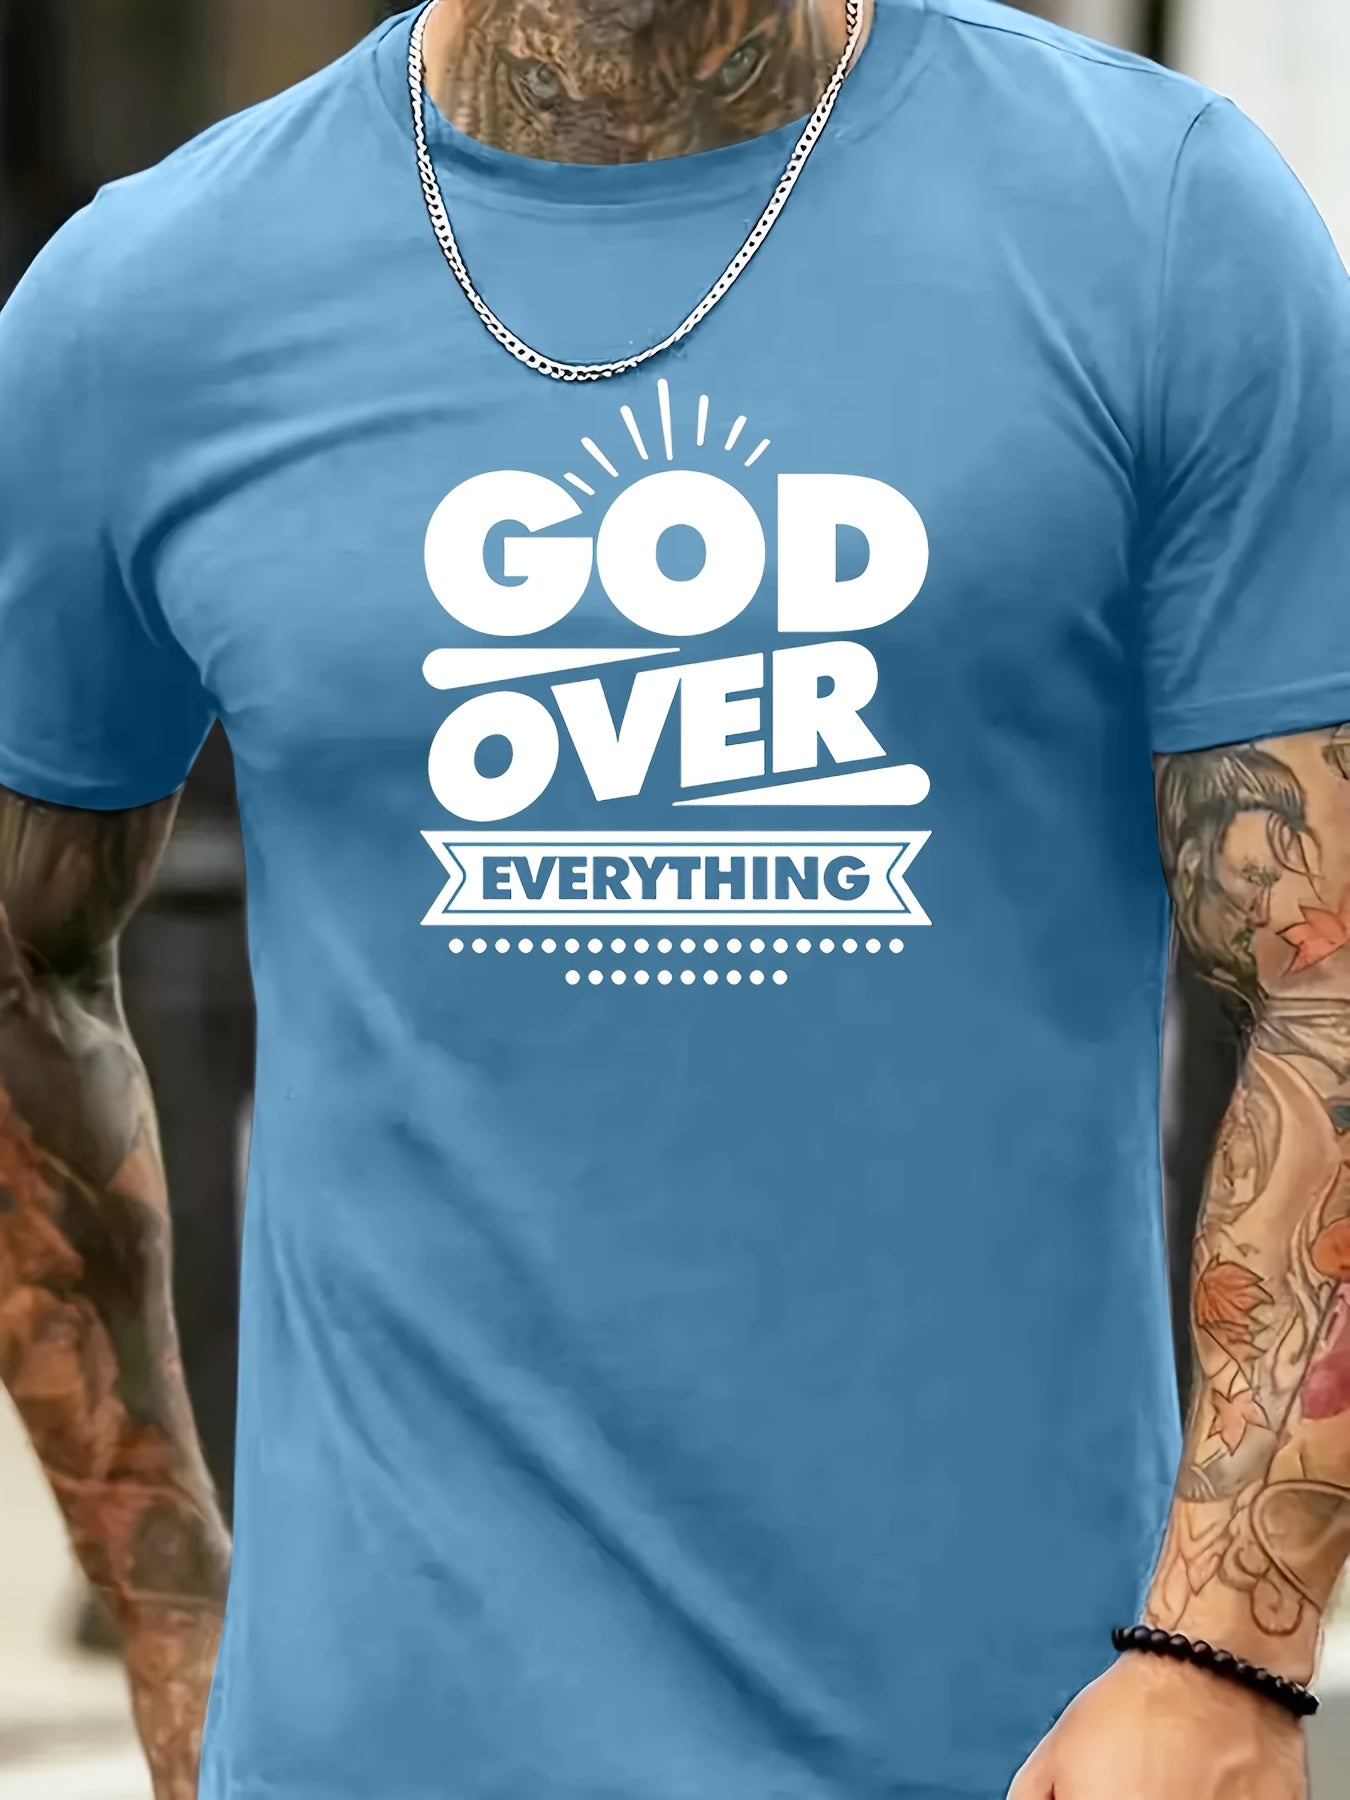 GOD OVER EVERYTHING Men's Christian T-shirt claimedbygoddesigns